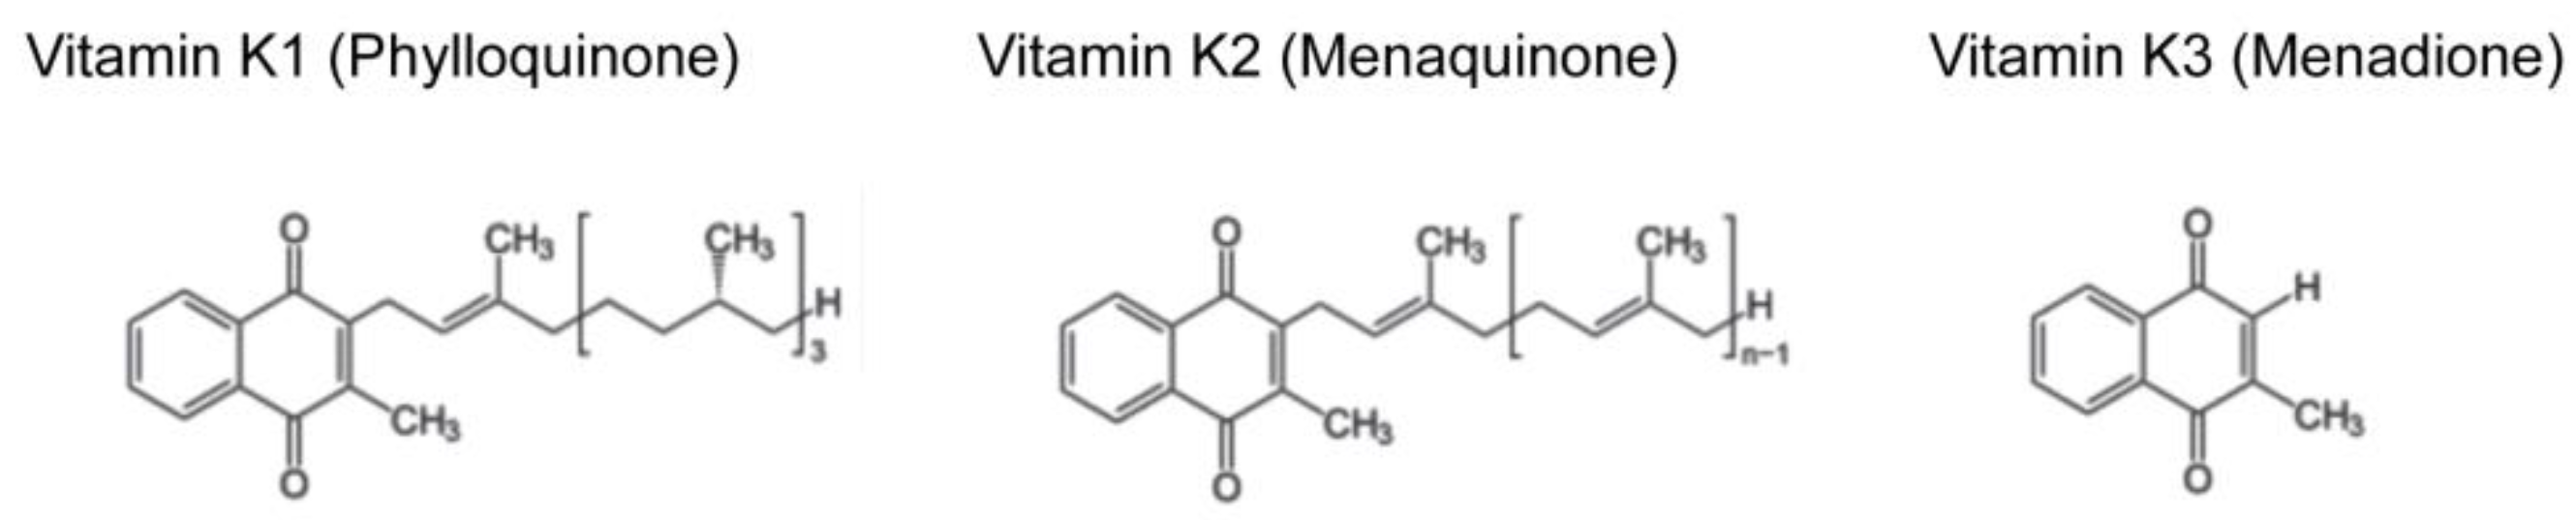 witamina-blog-vitamin-k1-vs-k2-vs-k3